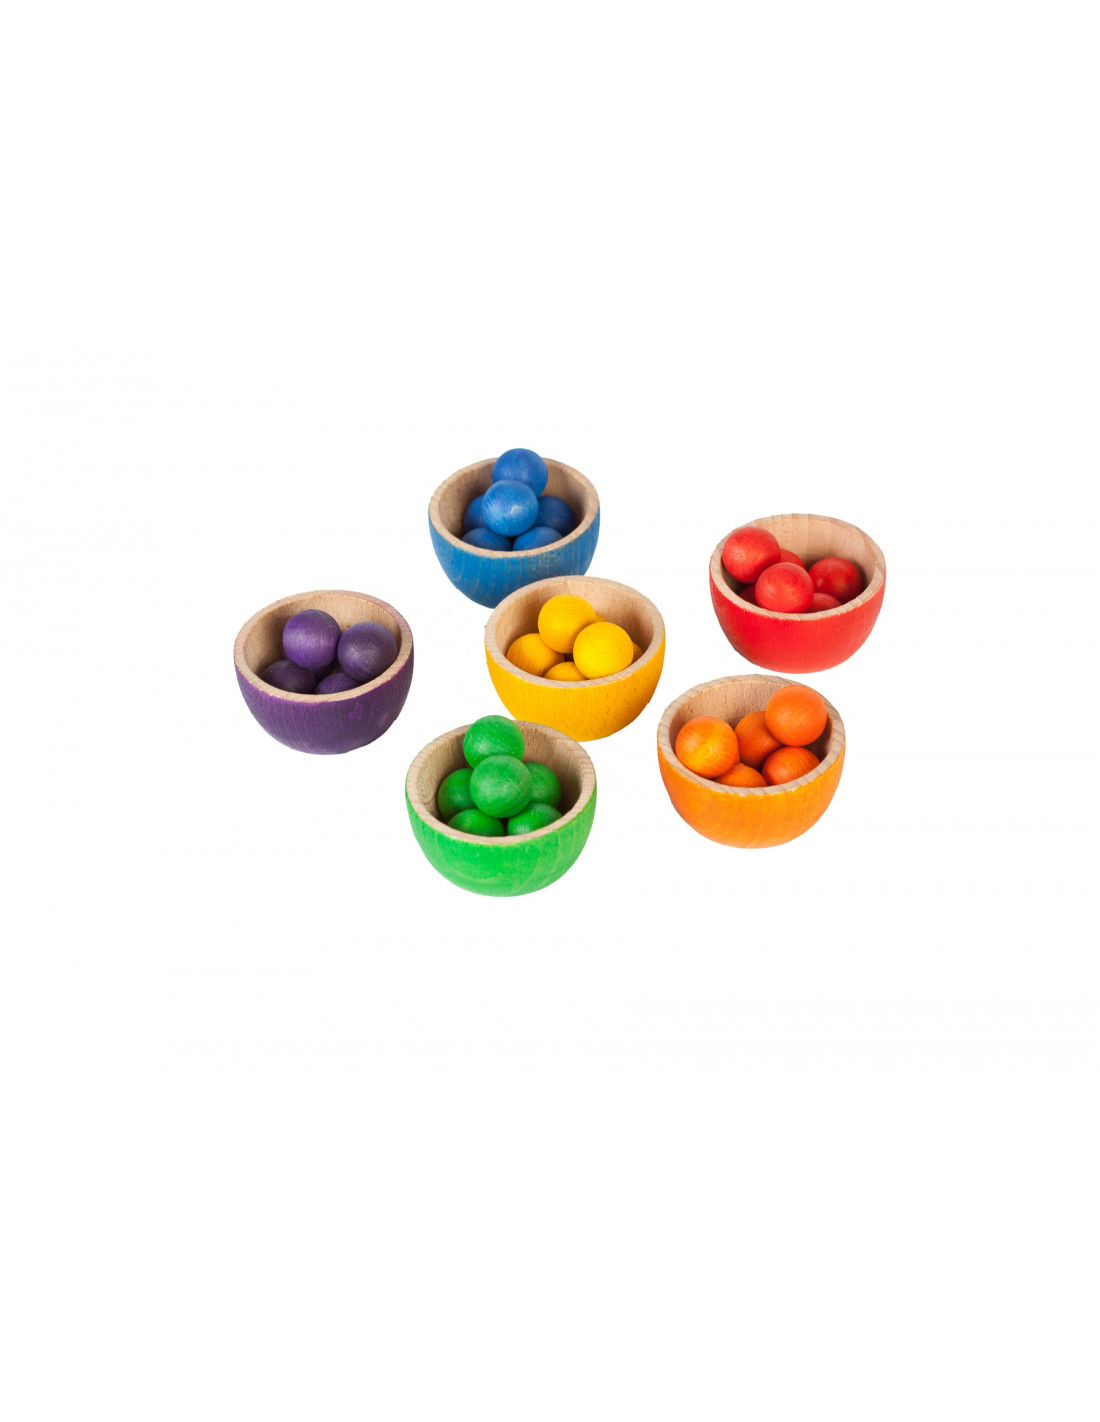 Beste Kleuren sorteer spel - Houtspel - Duurzaam houten speelgoed FA-32